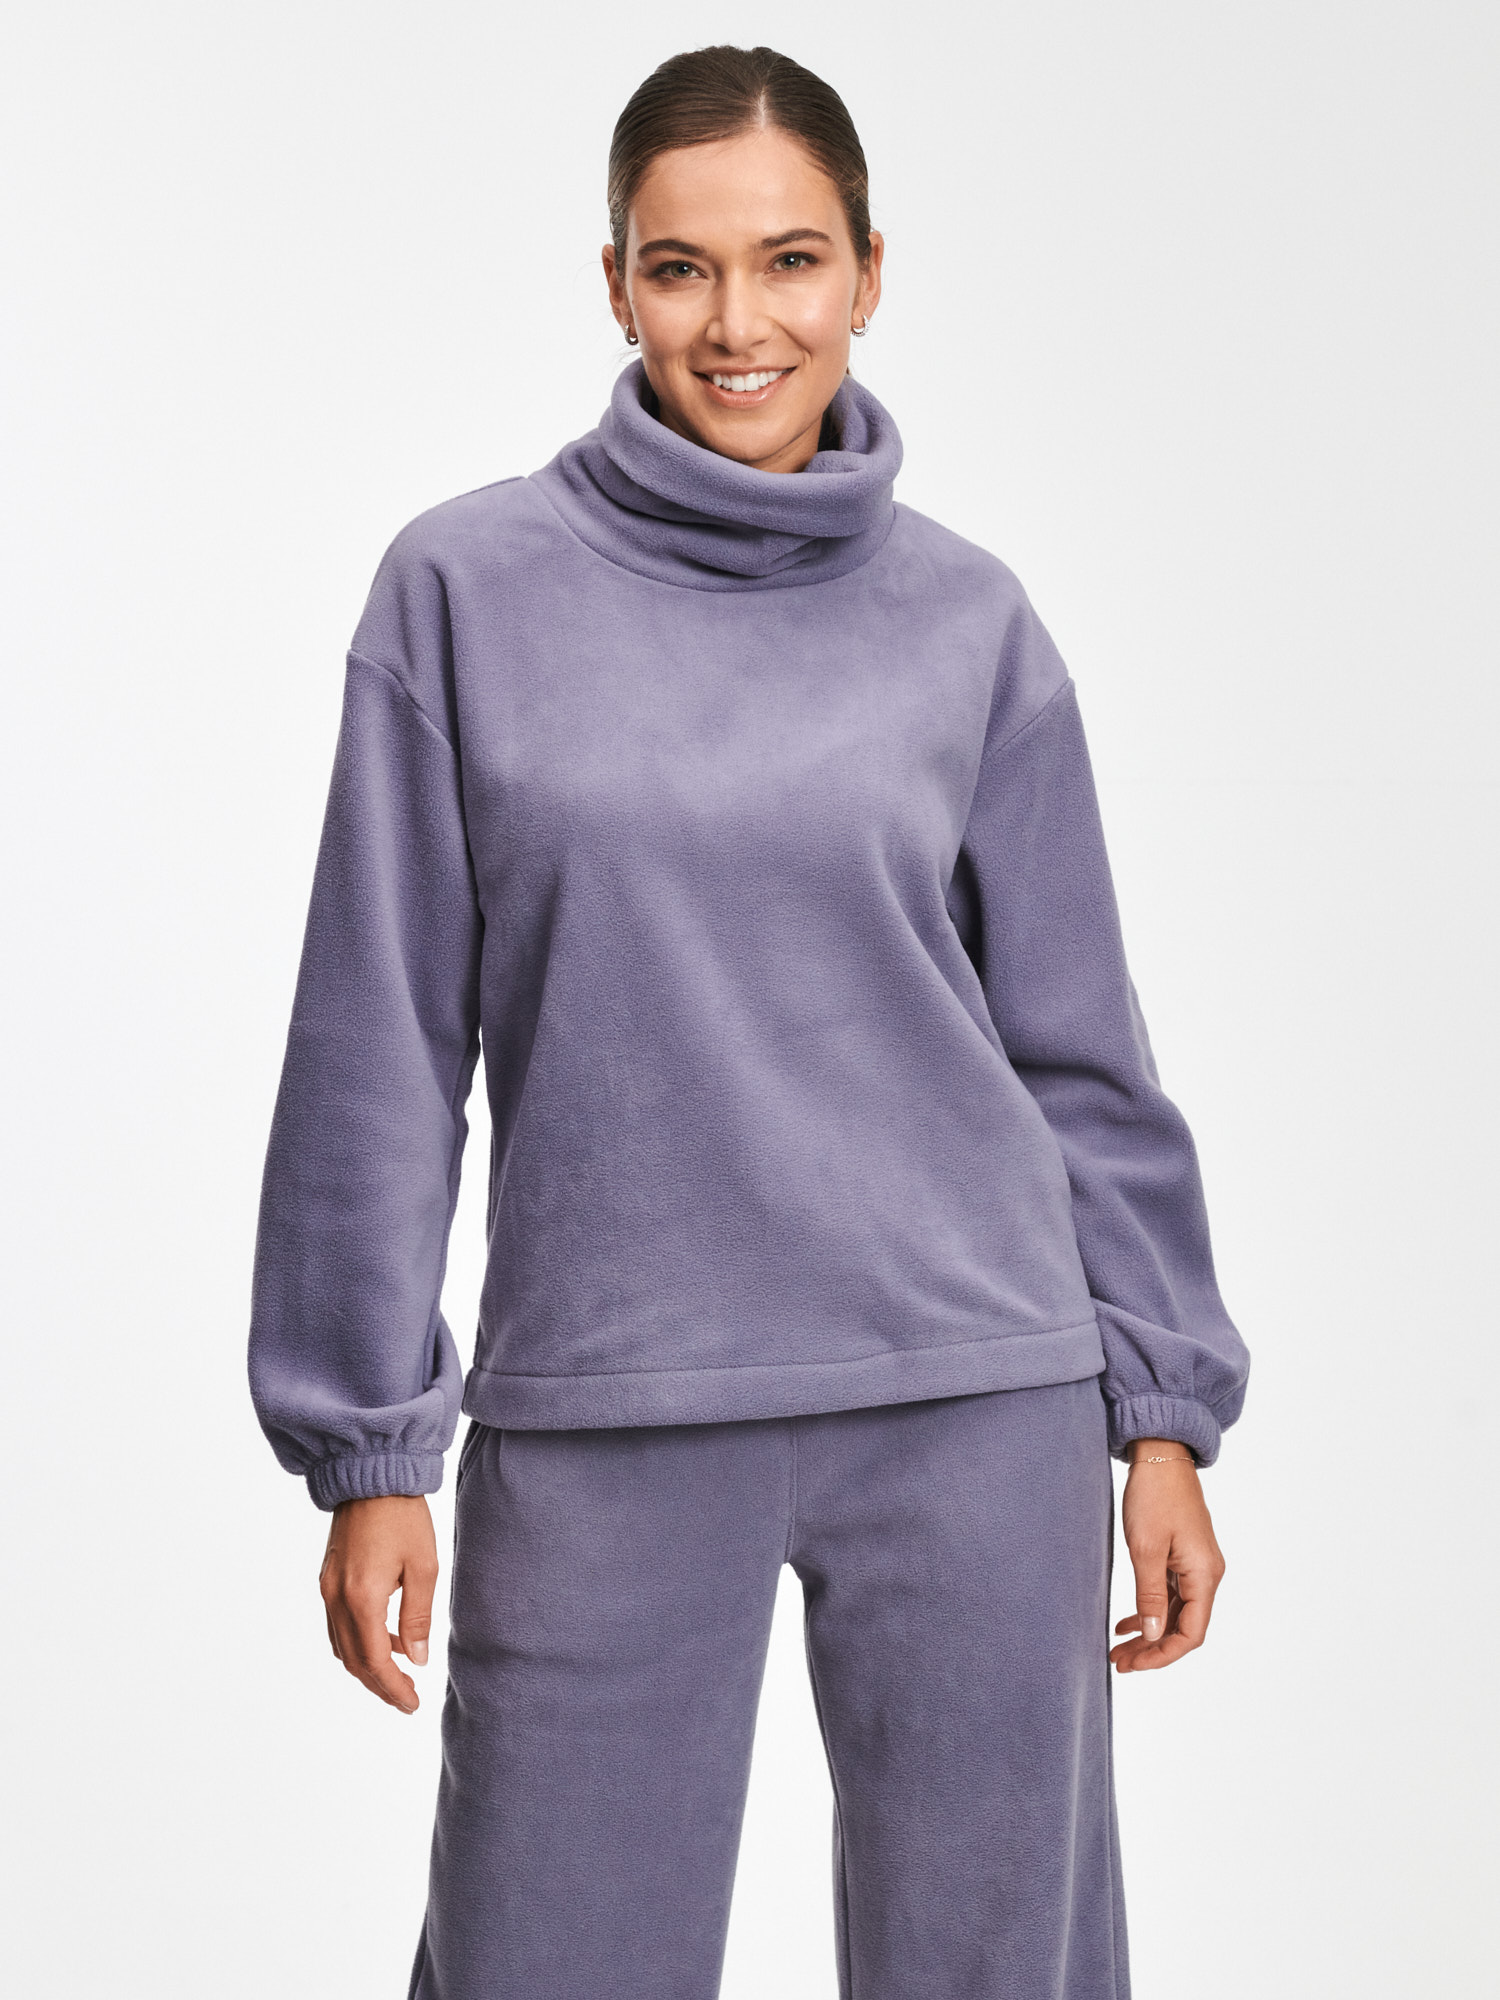 GAP Microfleece Sweatshirt And Turtleneck - Women